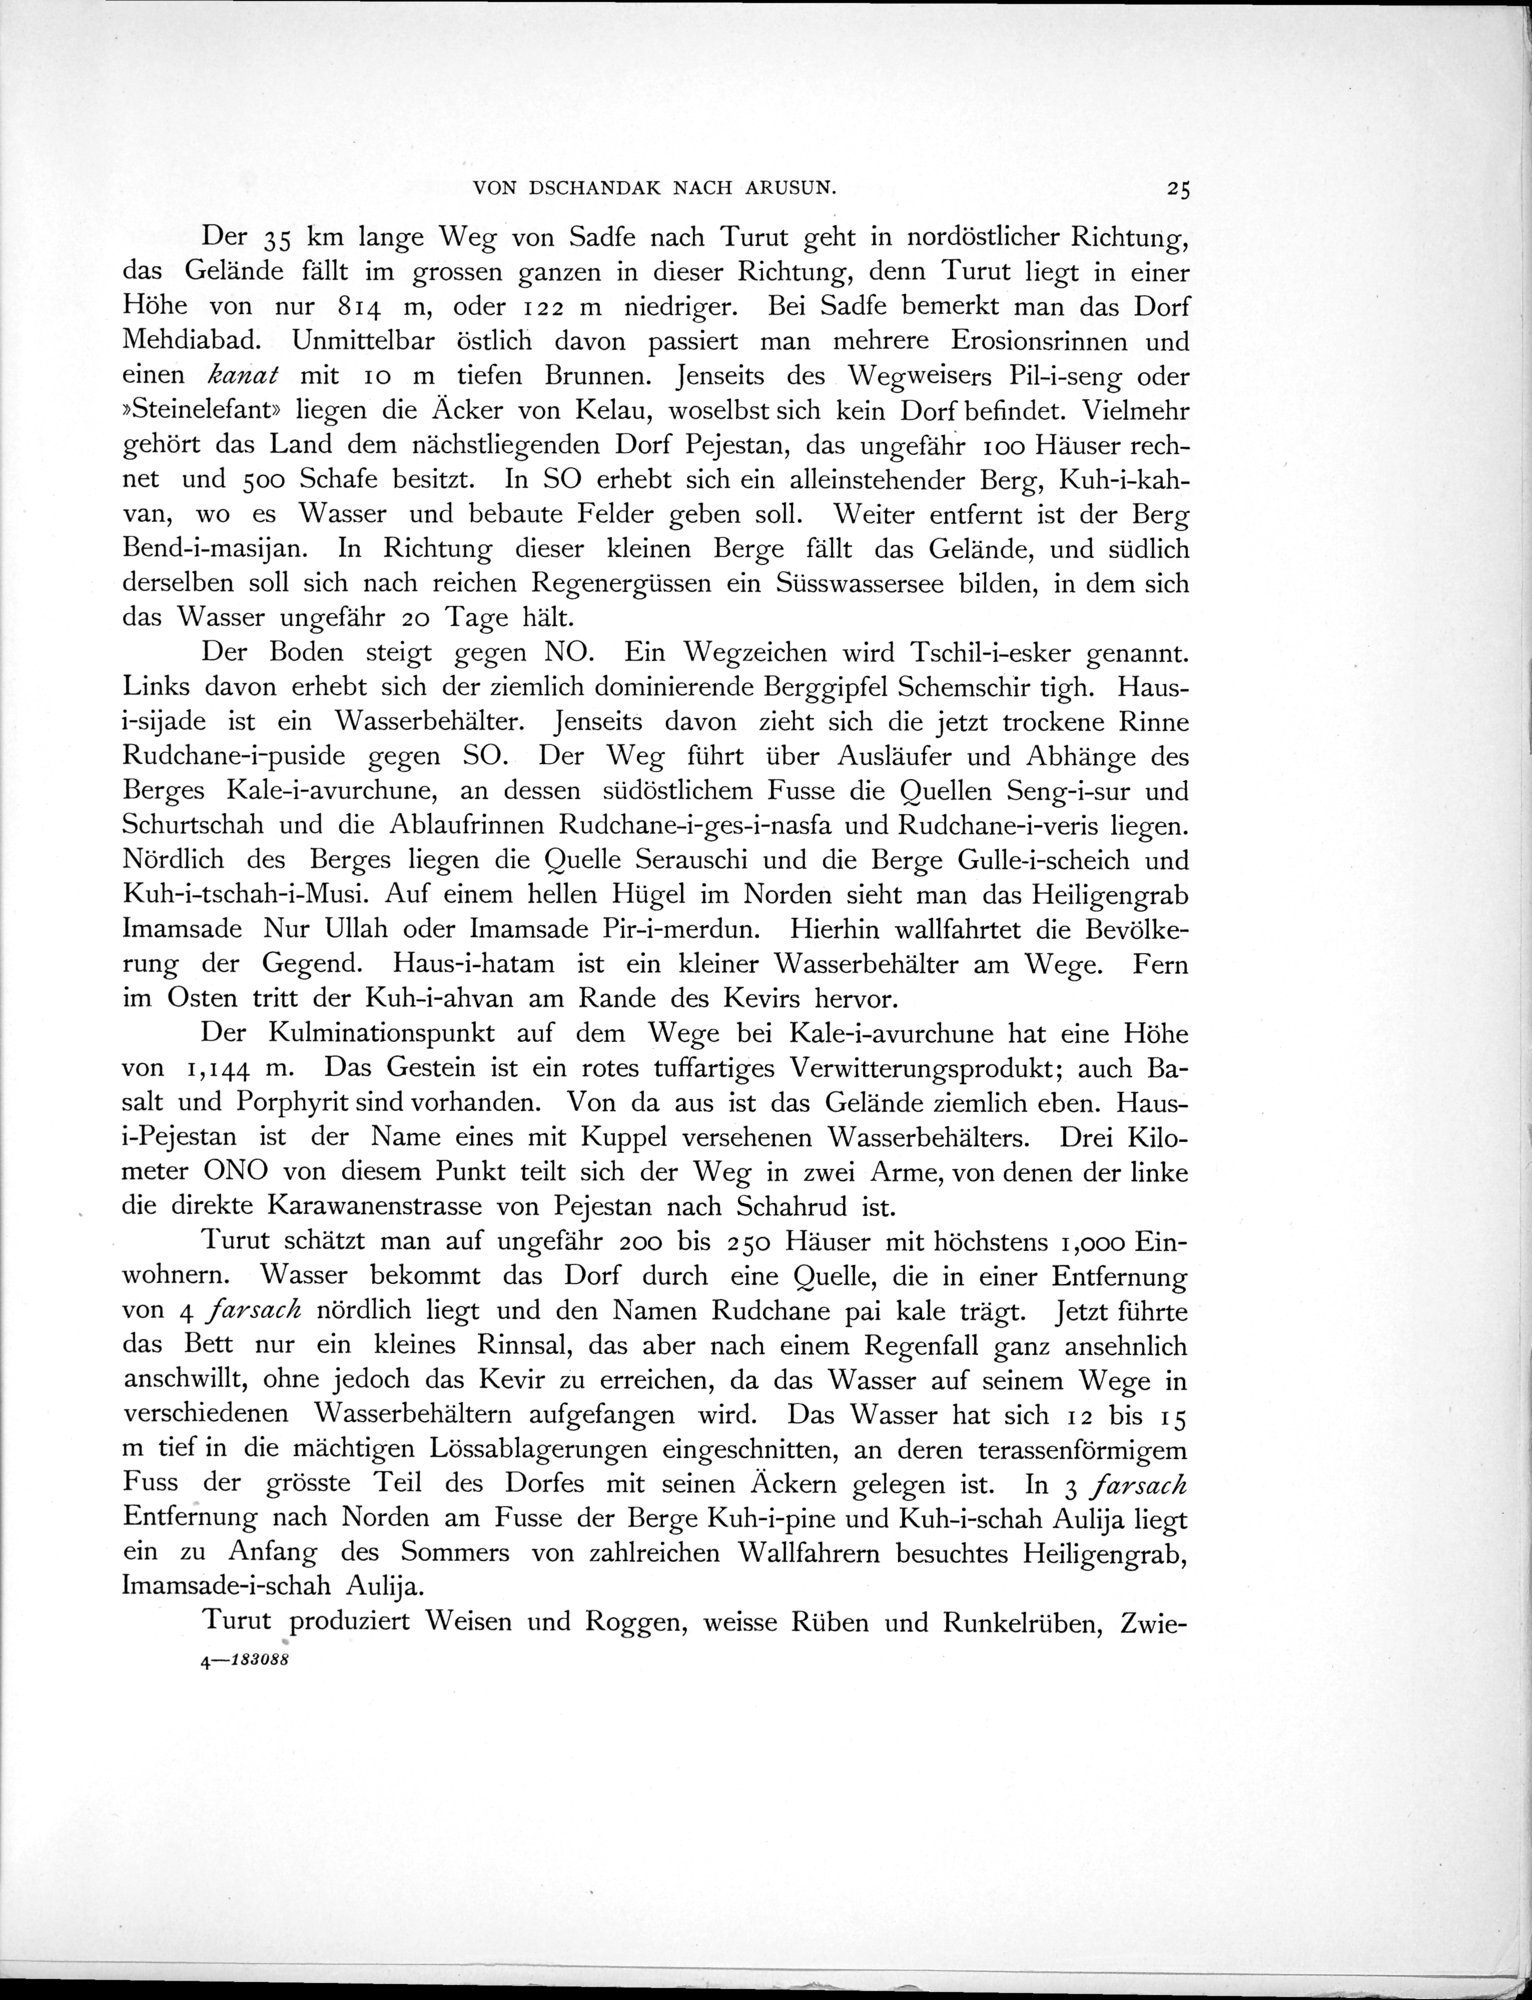 Eine Routenaufnahme durch Ostpersien : vol.1 / Page 81 (Grayscale High Resolution Image)